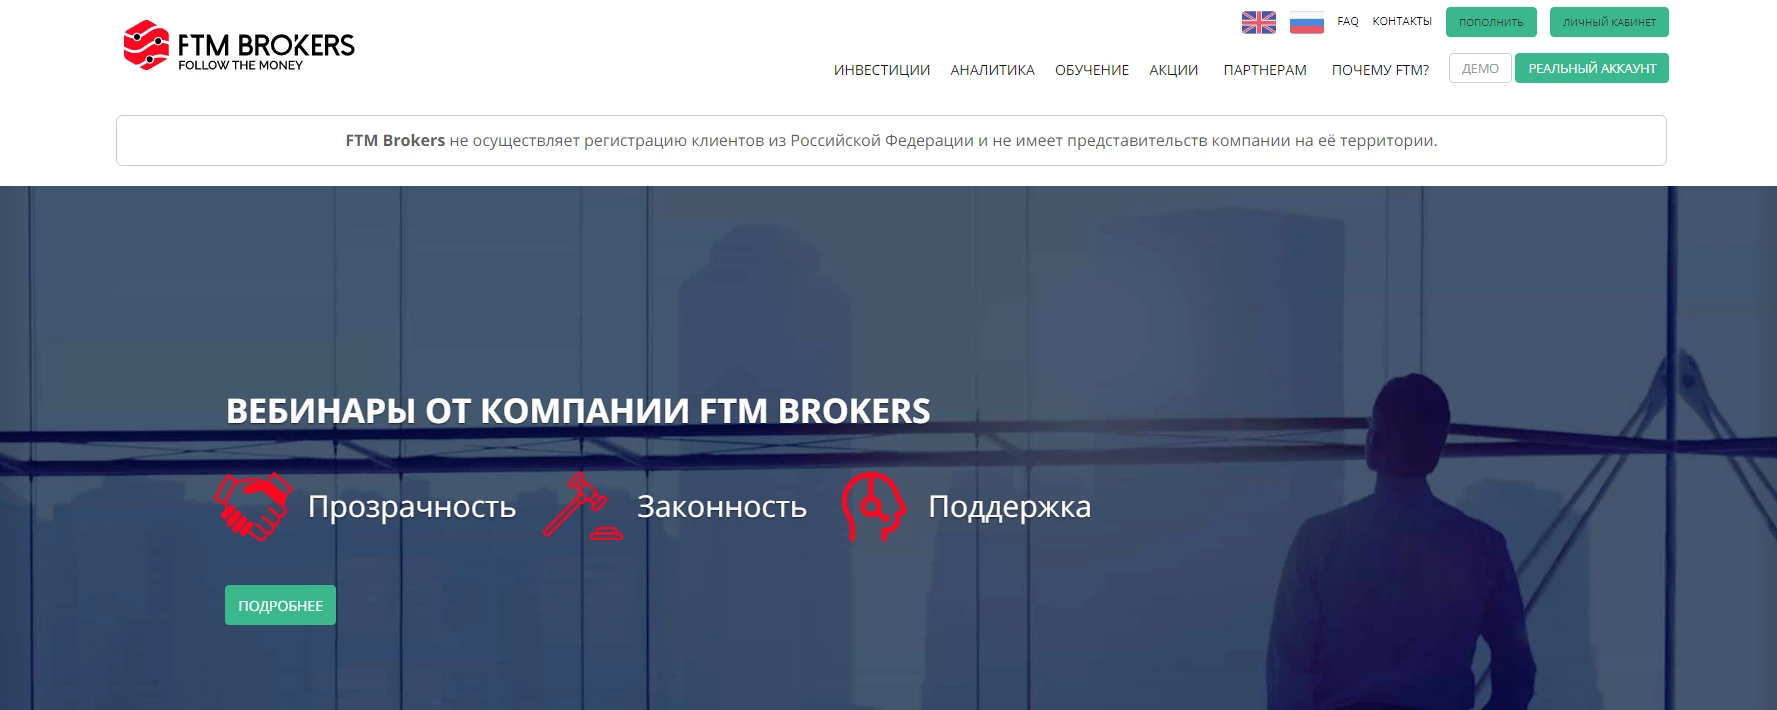 FTM BROKERS – обзор белорусского брокера и его торговых условий